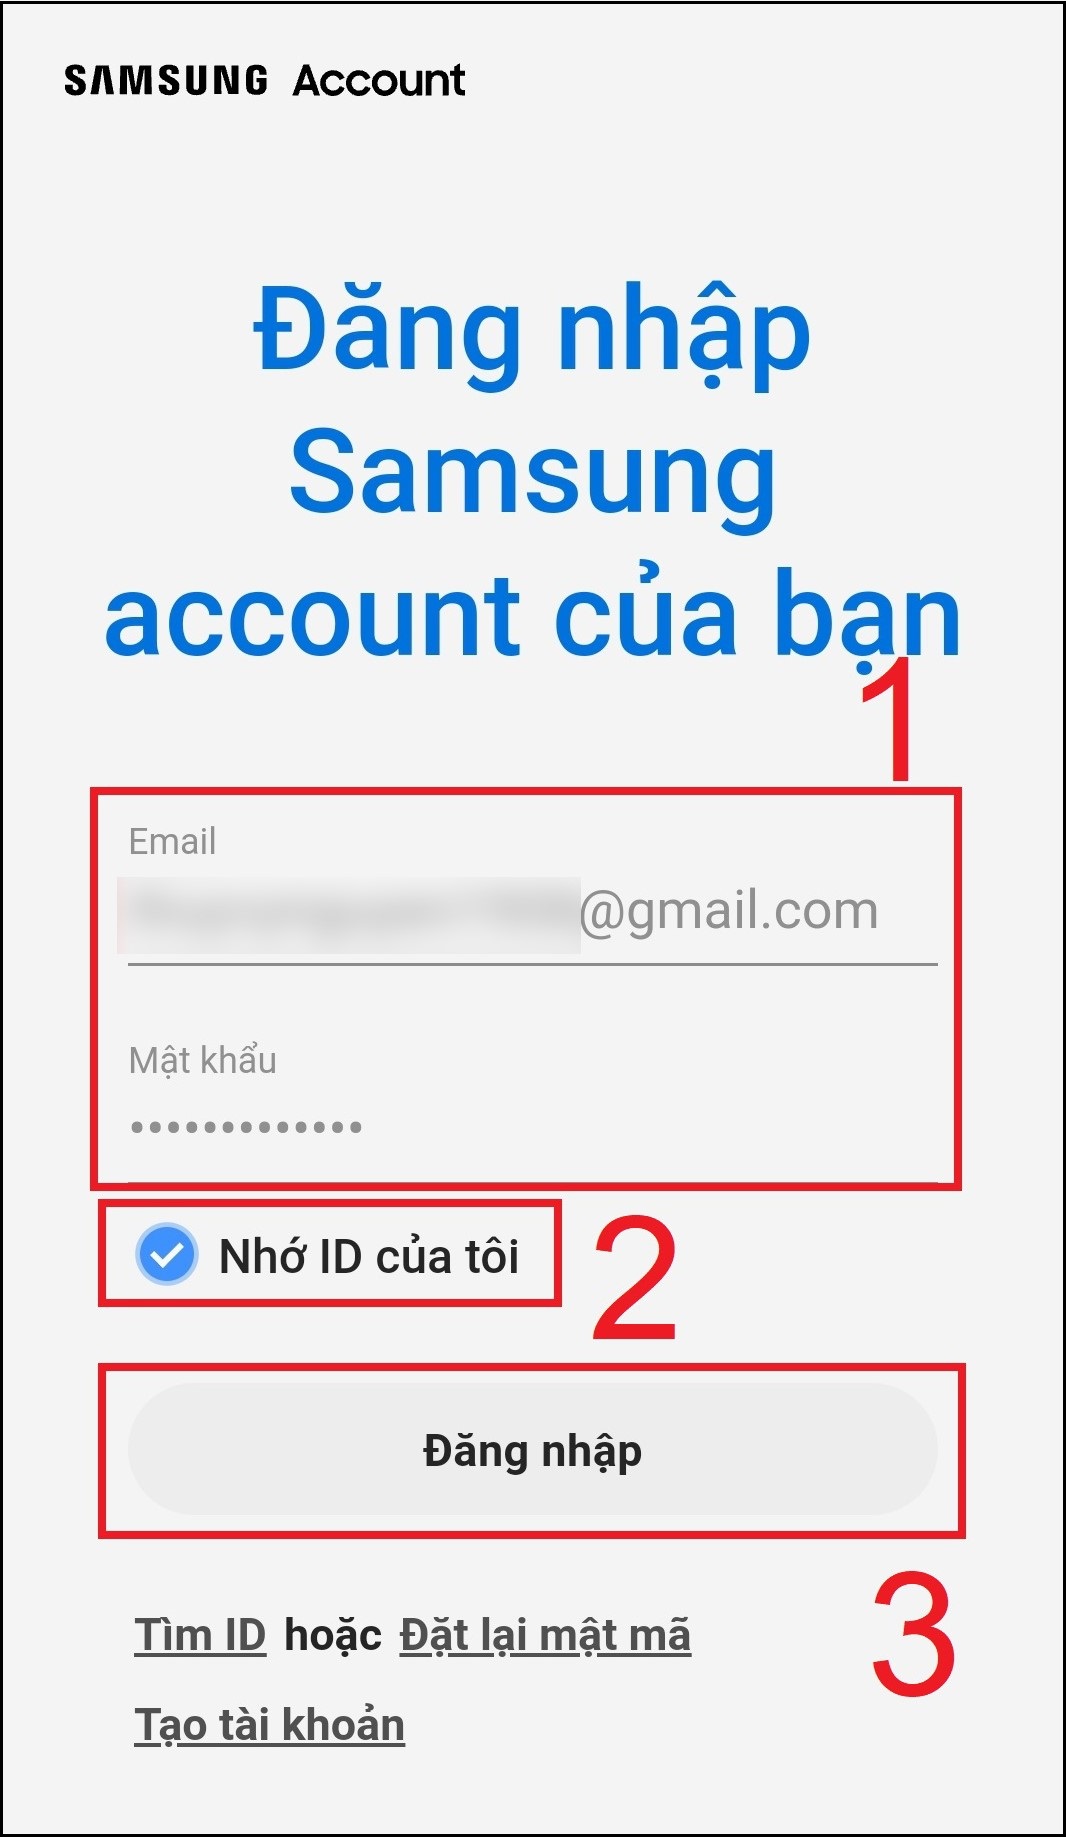 Cuối cùng, bạn nhập lại mật khẩu đăng nhập Samsung Account và chọn Nhớ ID của tôi để thuận tiện cho lần đăng nhập tiếp theo nhé > Chọn Đăng nhập.